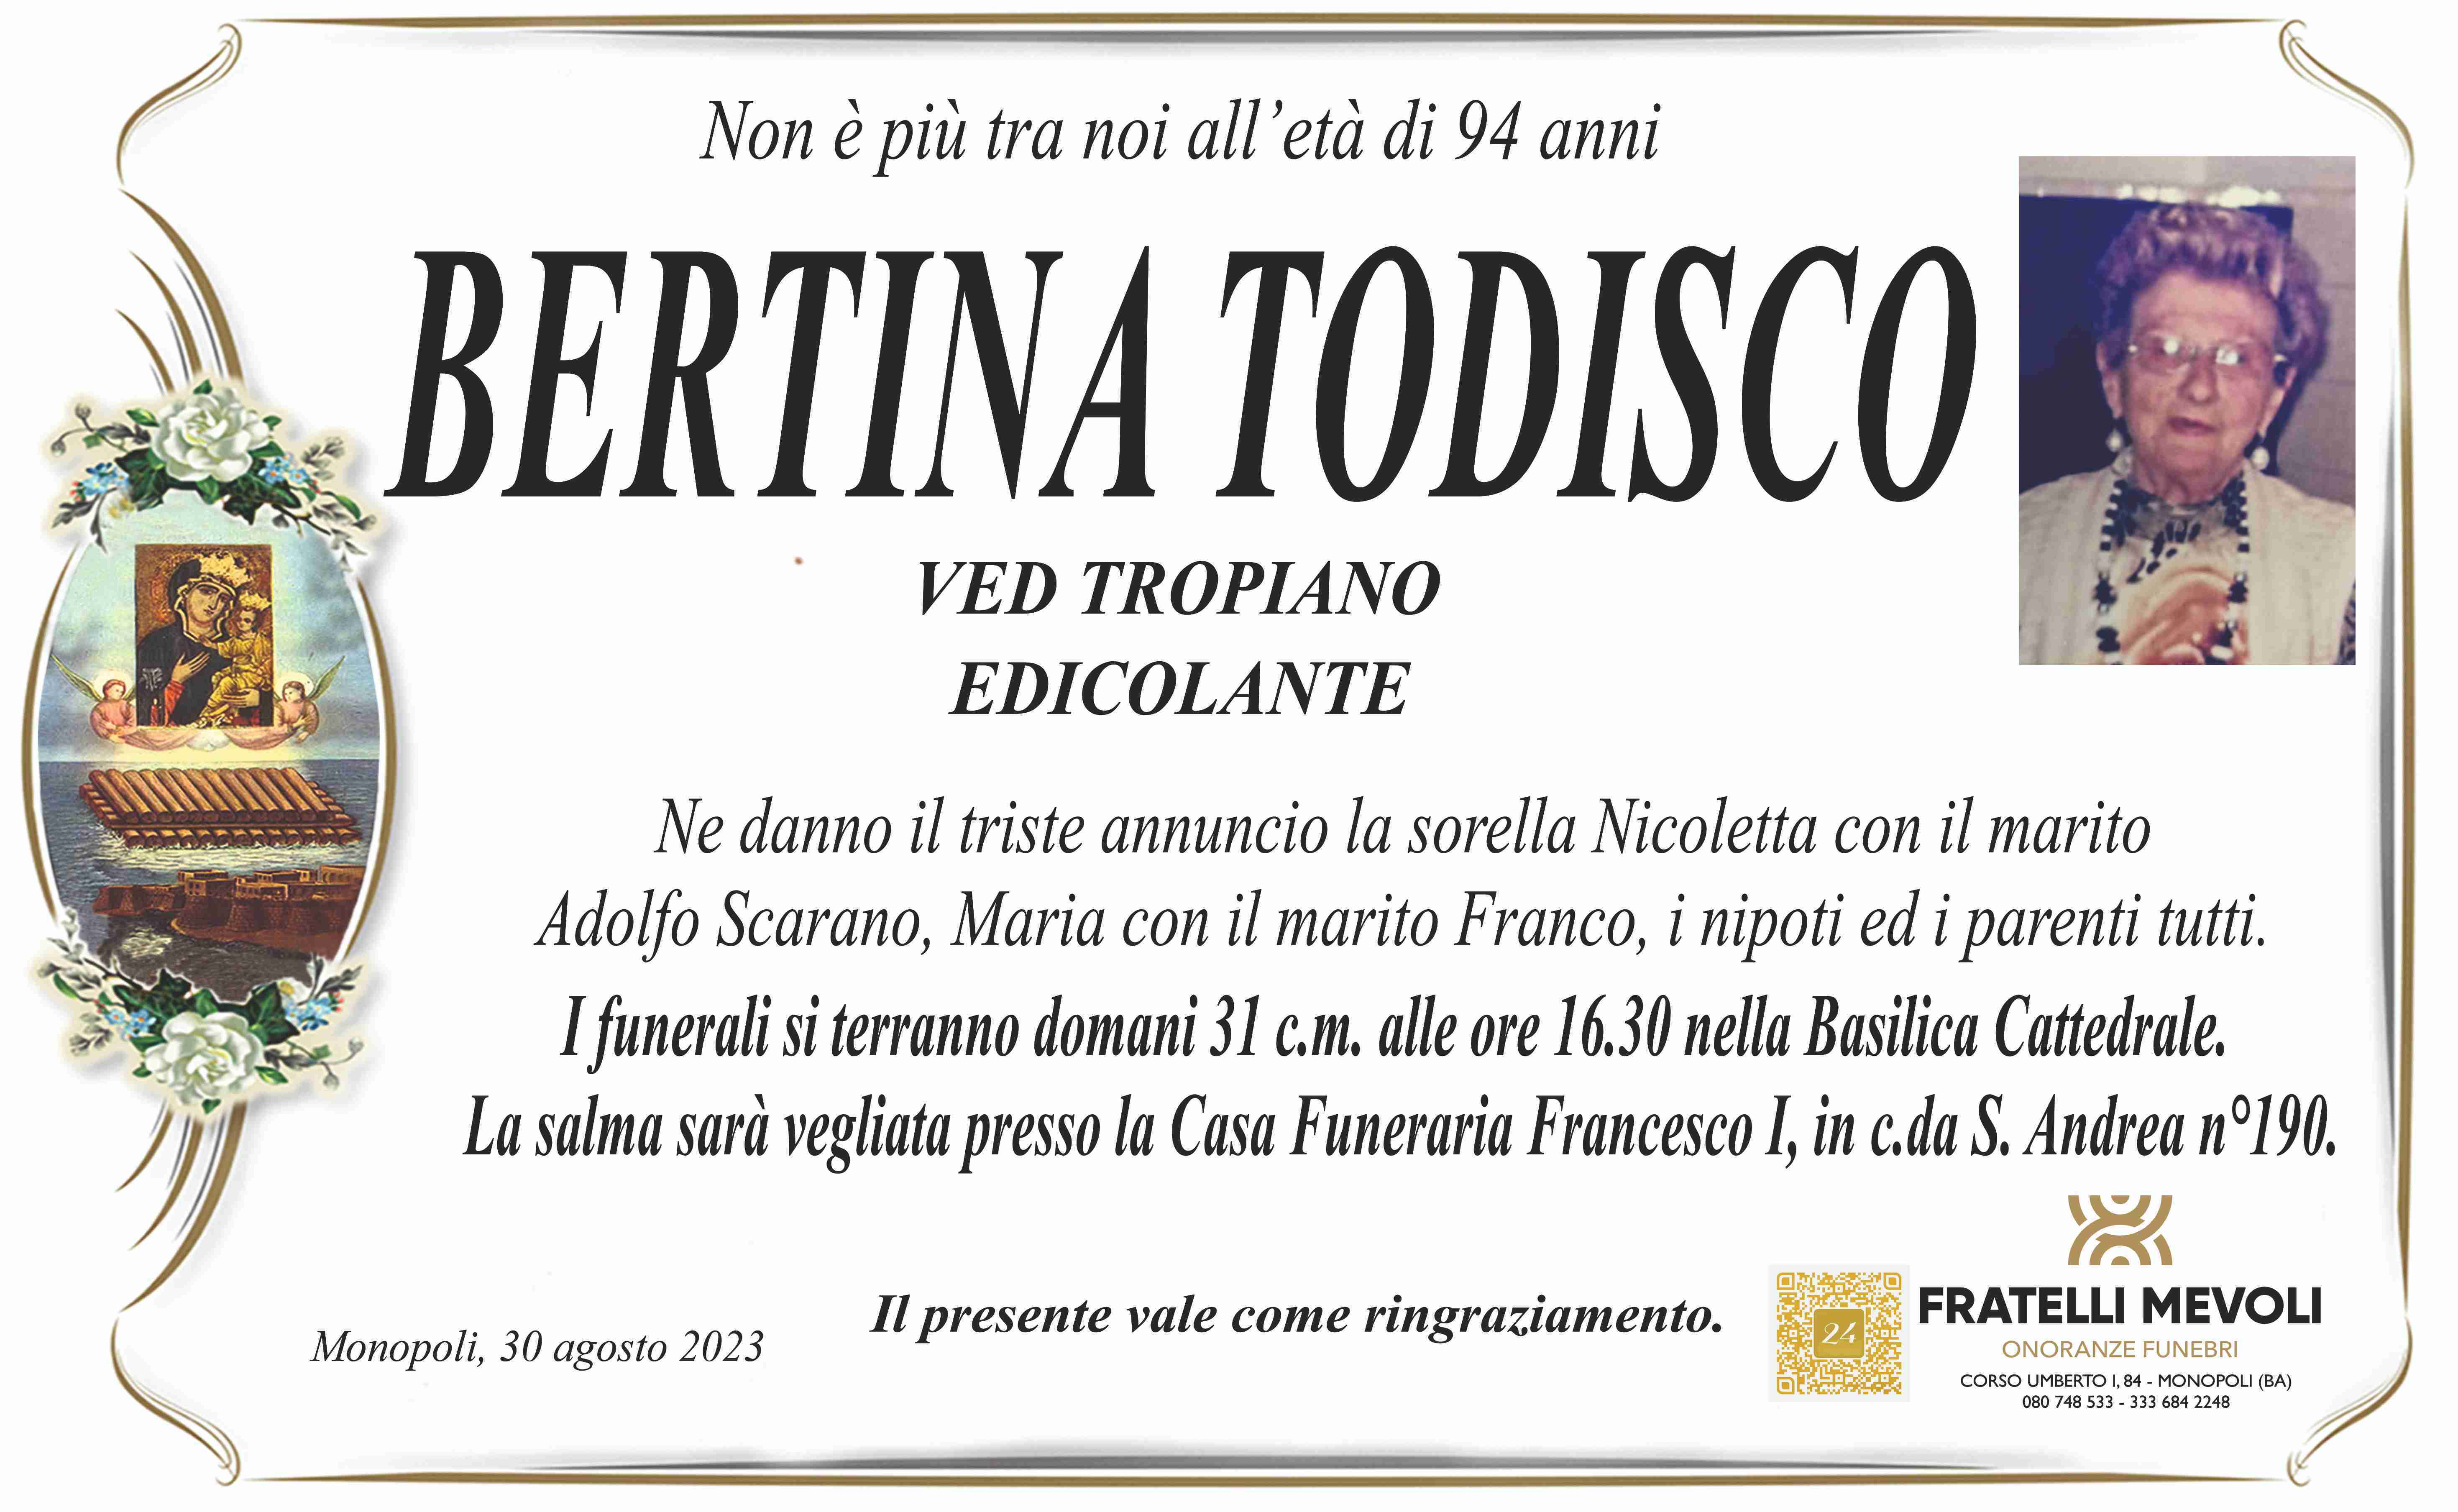 Bertina Todisco